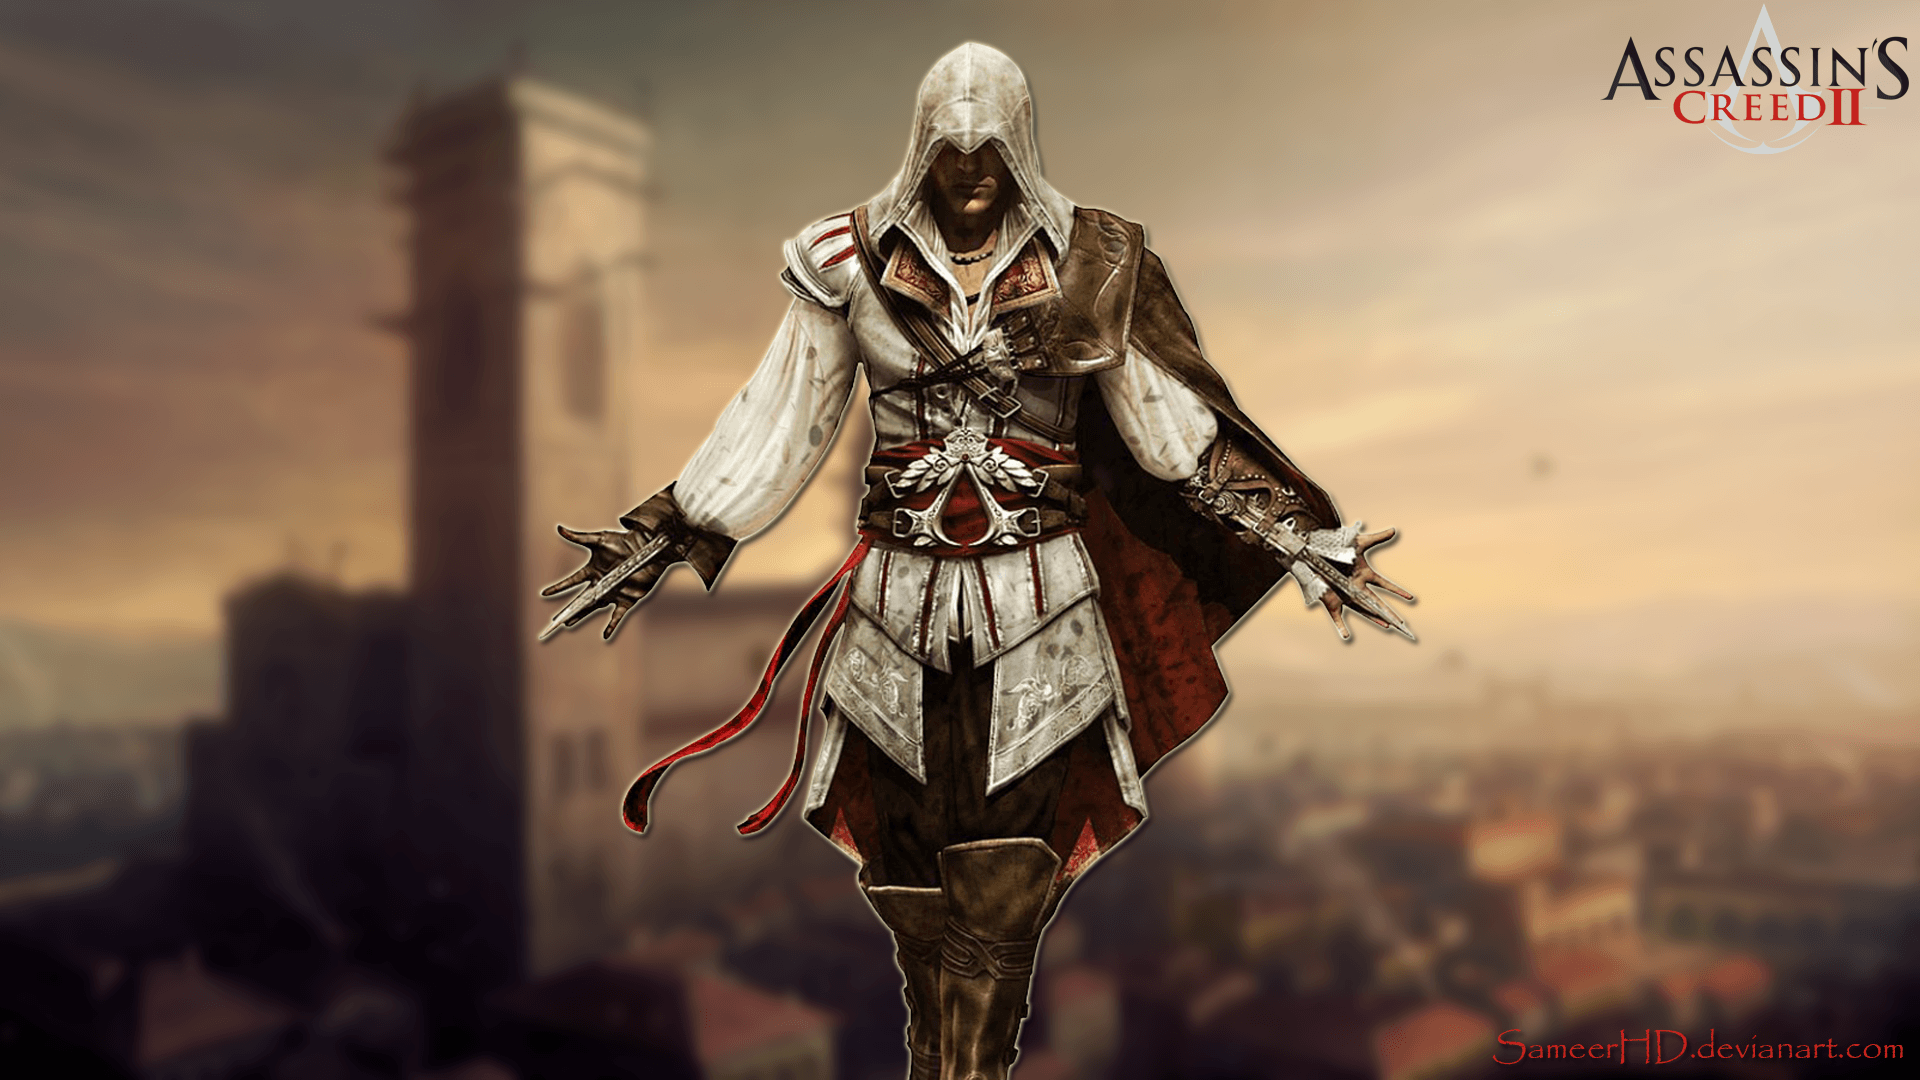 Assassin's Creed II Ezio Auditore